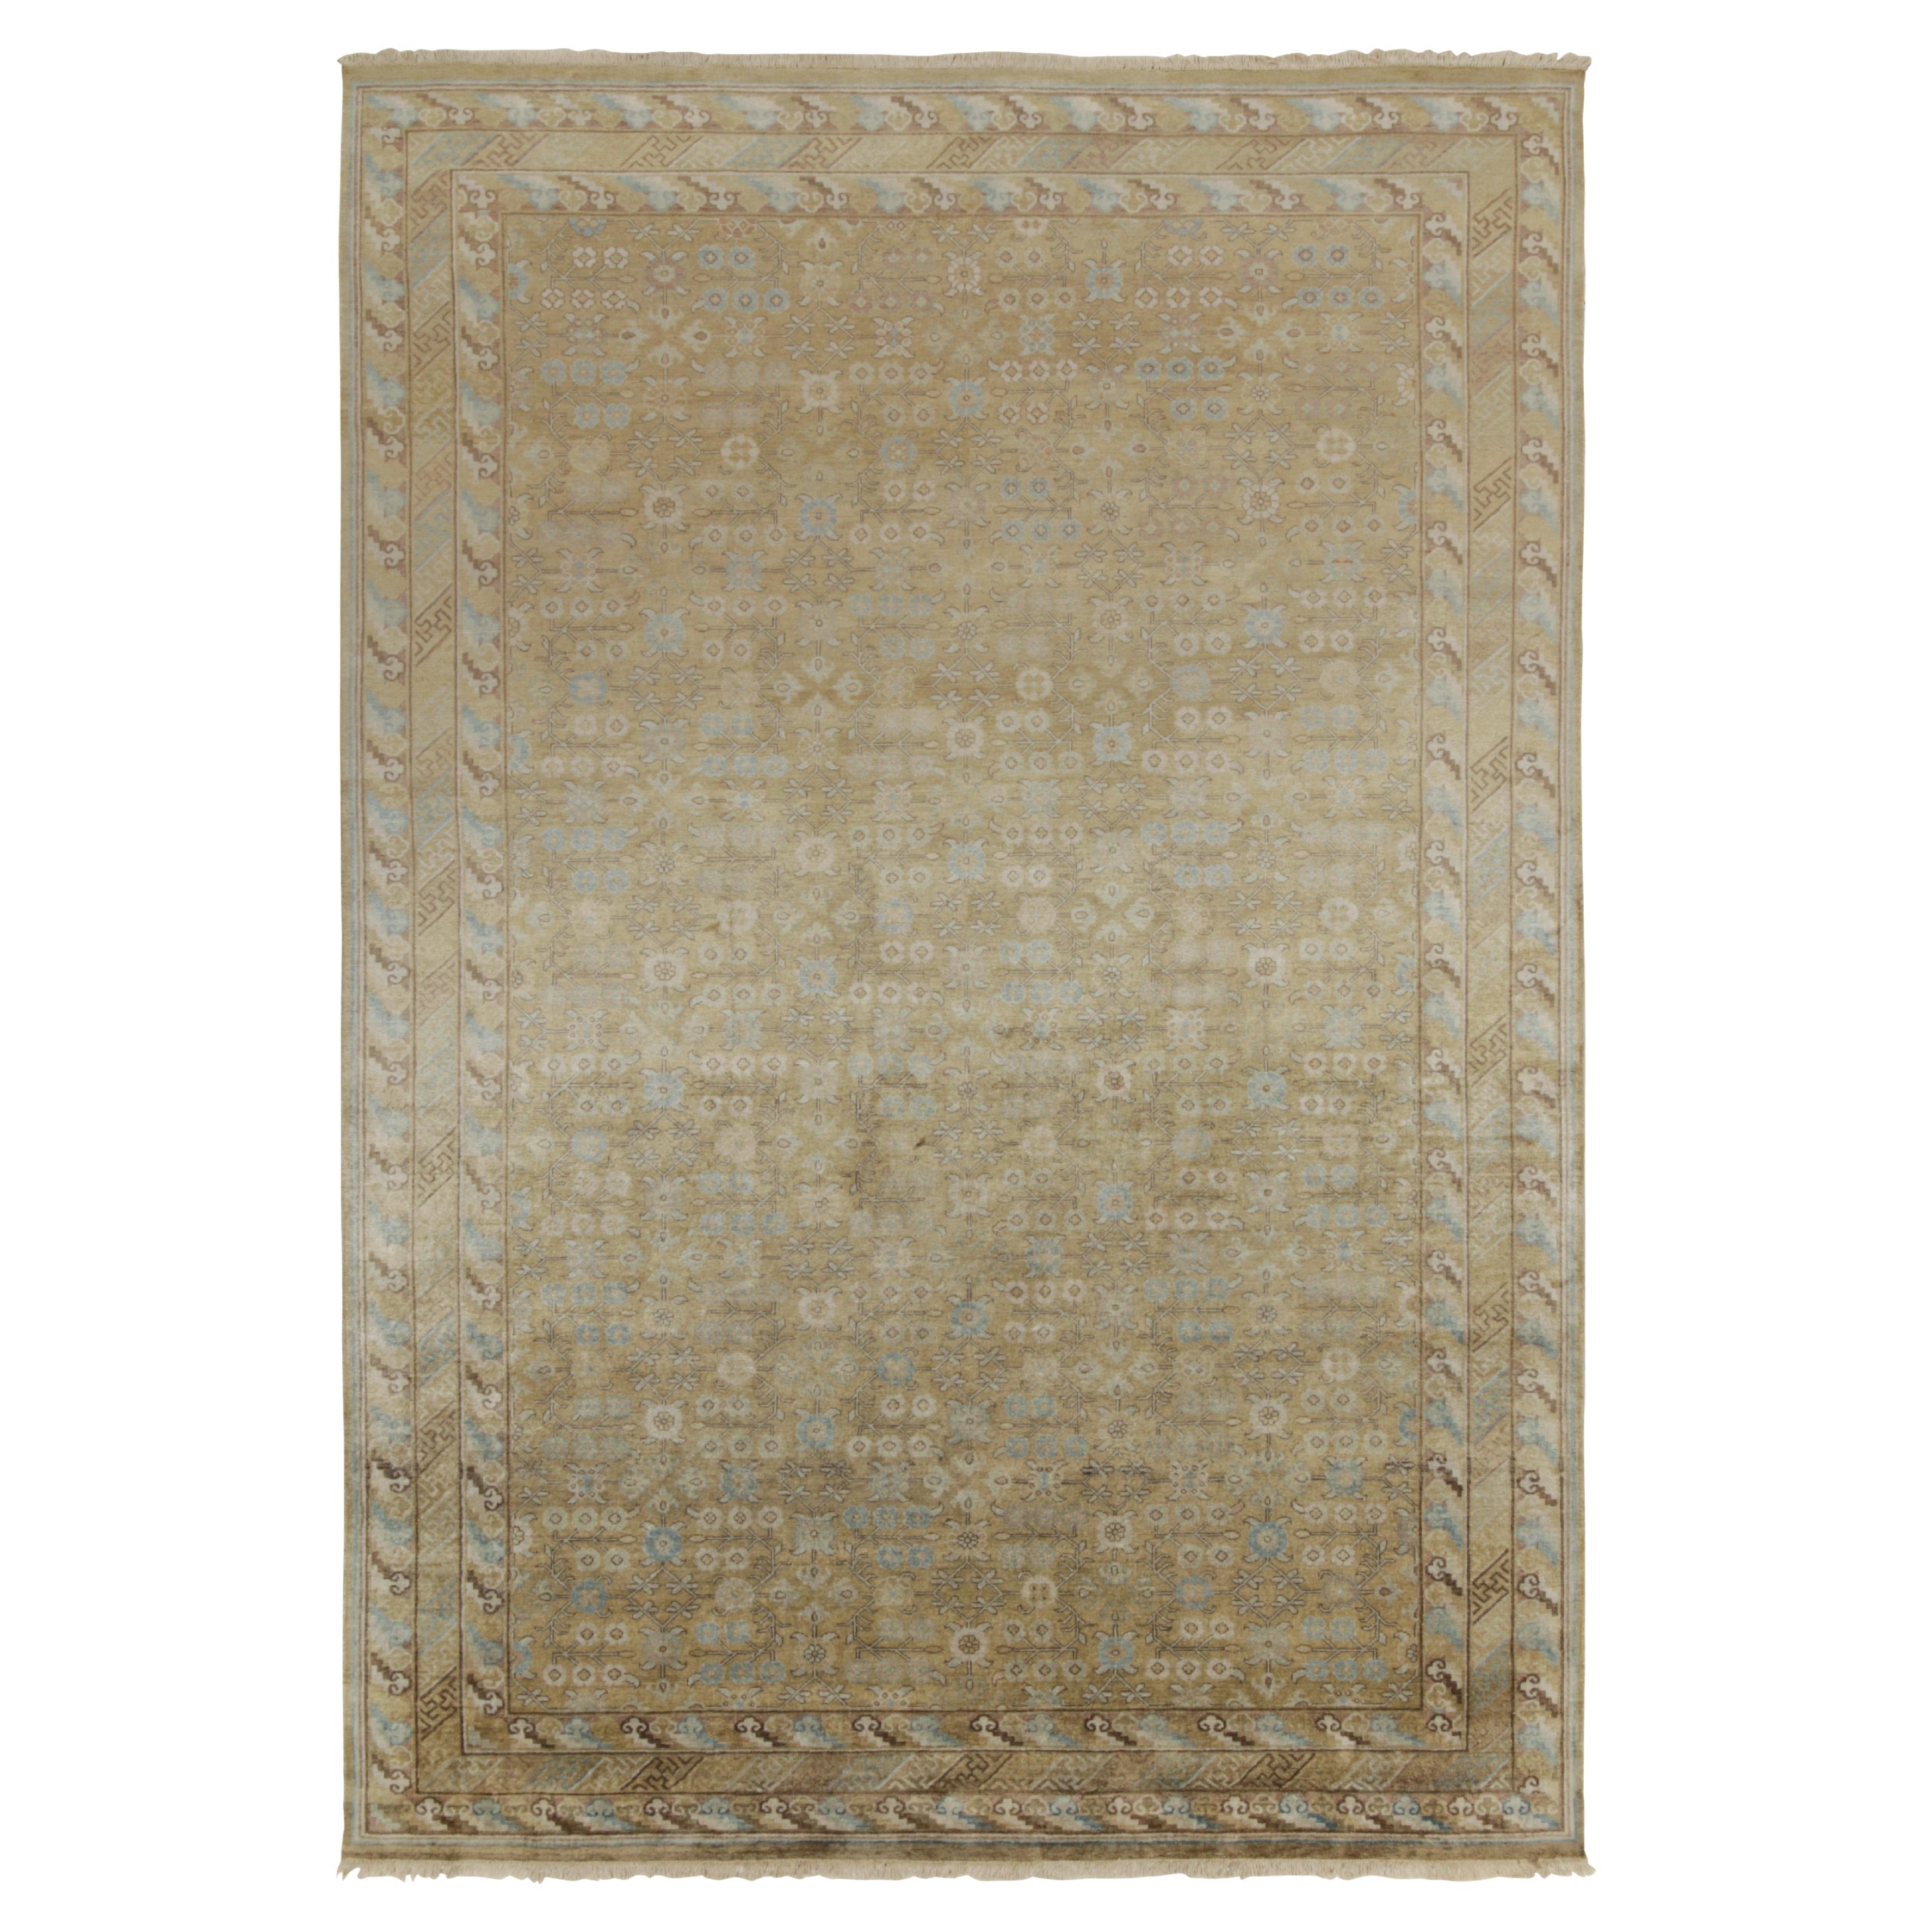 Zeitgenössischer Teppich im Khotan-Stil von Teppich & Kelim in Gold und Beige mit geometrischem Muster